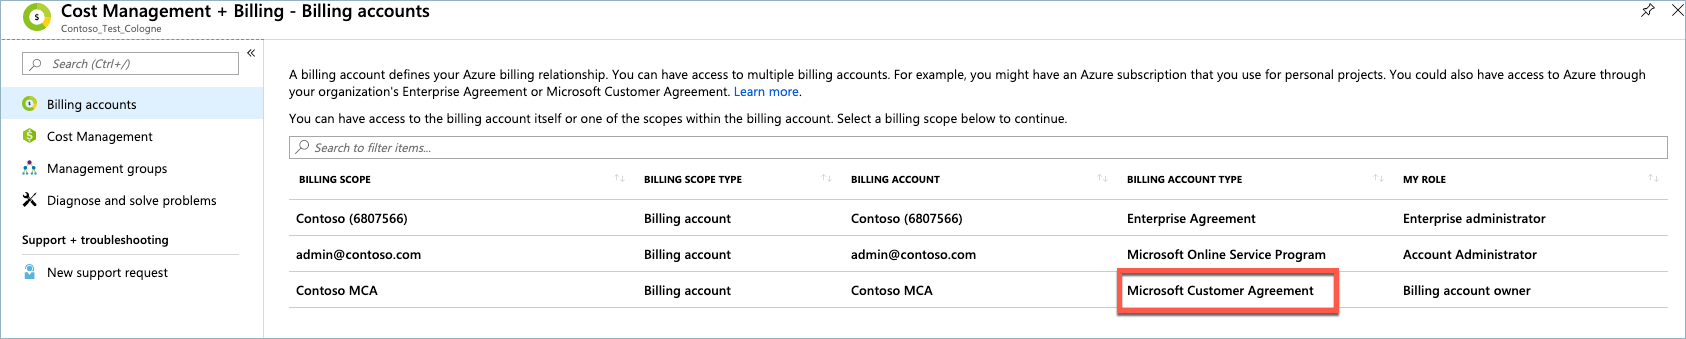 Contrato de Cliente Microsoft, Tipo de Conta de Faturação, Lista de contas de faturação, portal do Microsoft Azure